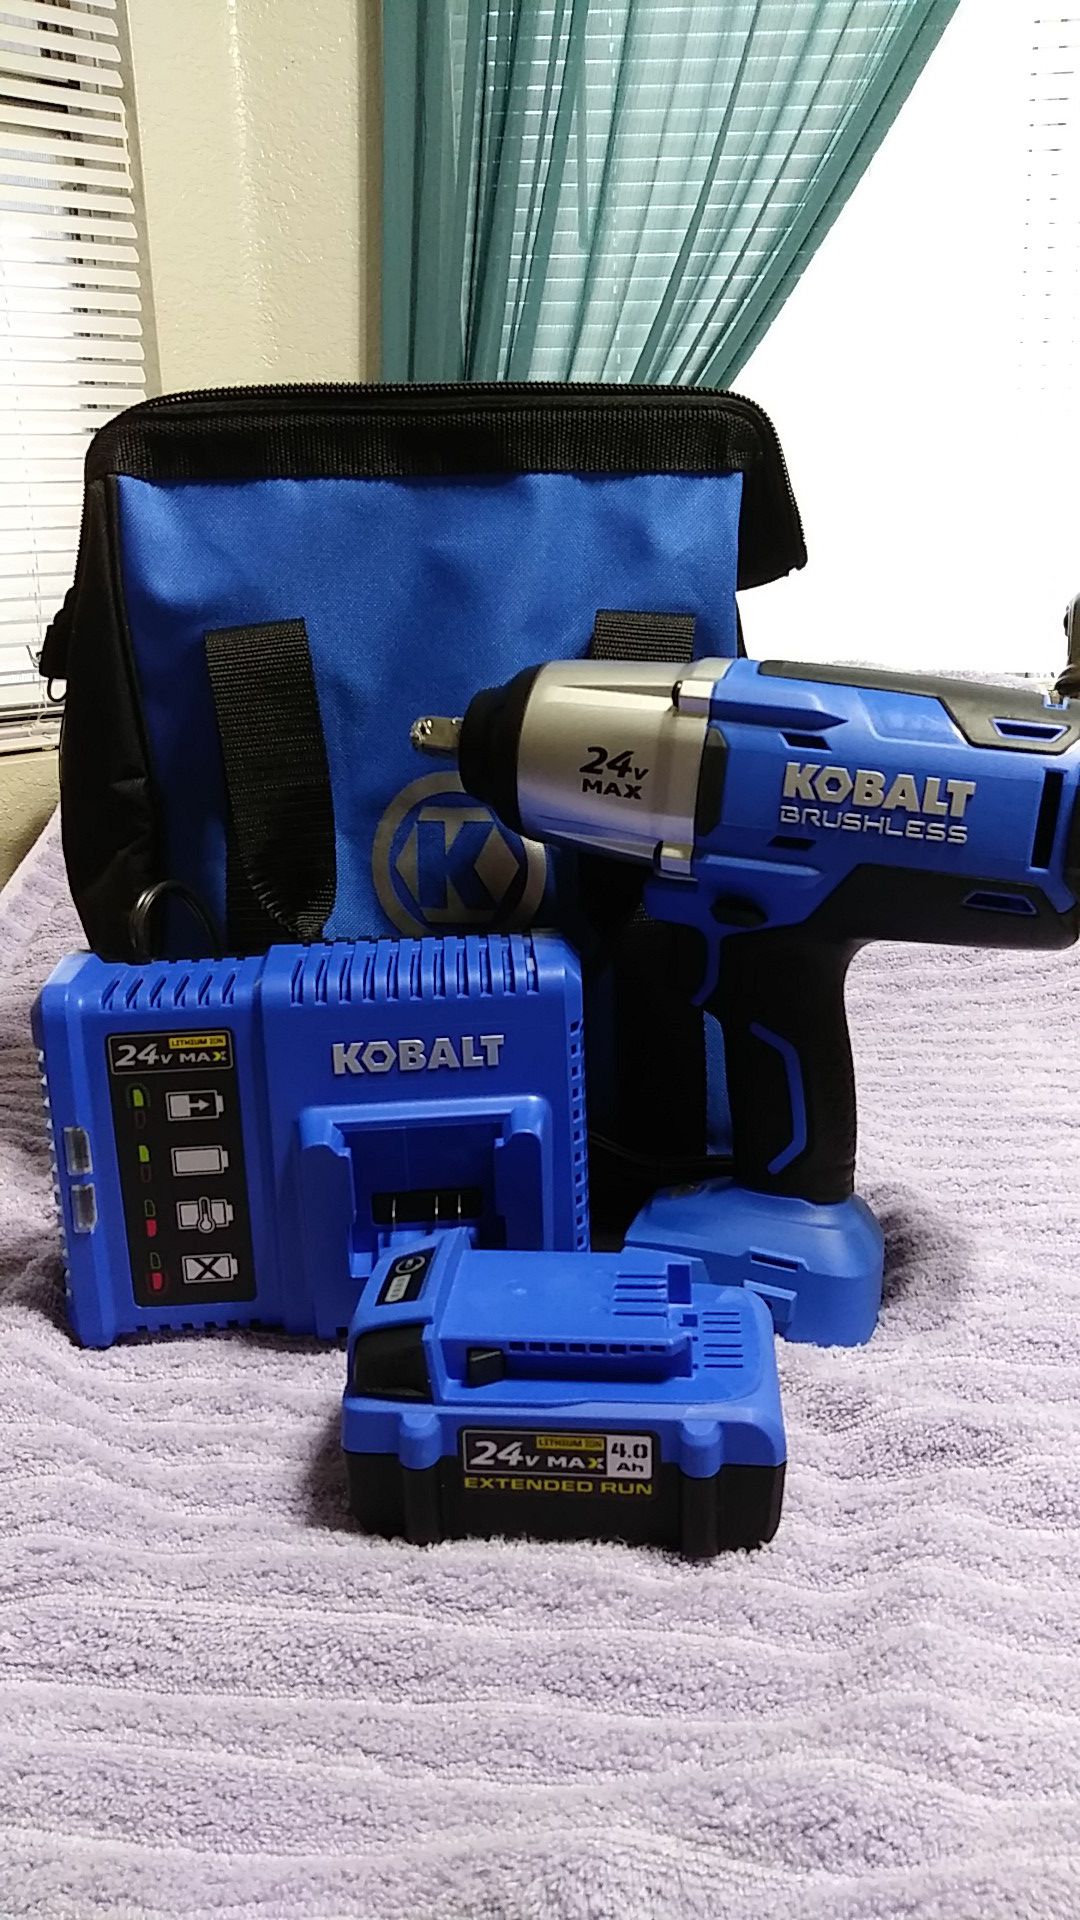 Kobalt 24v max 1/2" brushless impact wrench kit